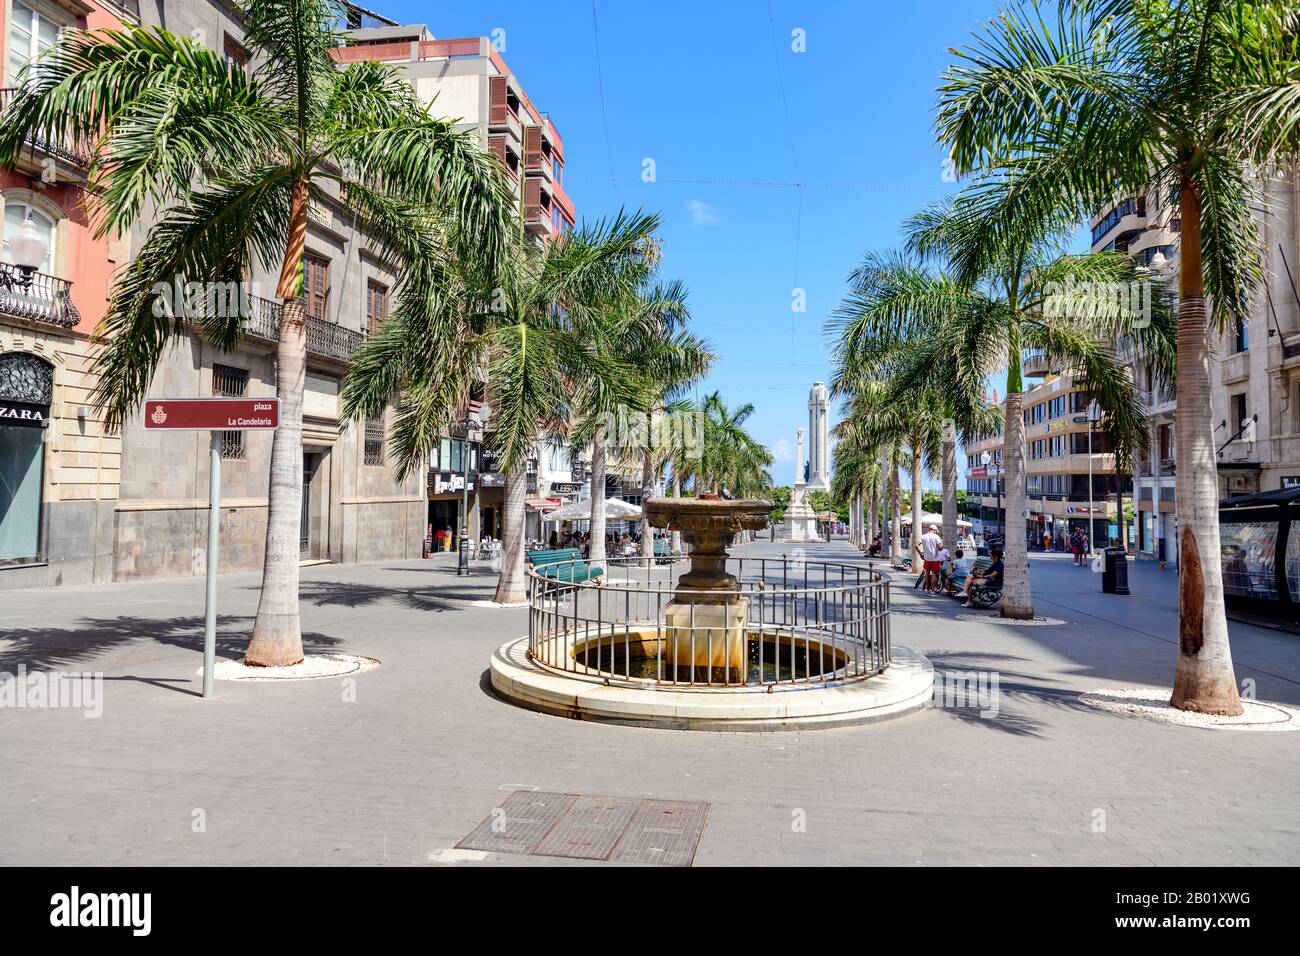 Plaza de la Candelaria. Une pittoresque rue piétonne bordée de palmiers, Santa Cruz de Tenerife, îles Canaries. Banque D'Images